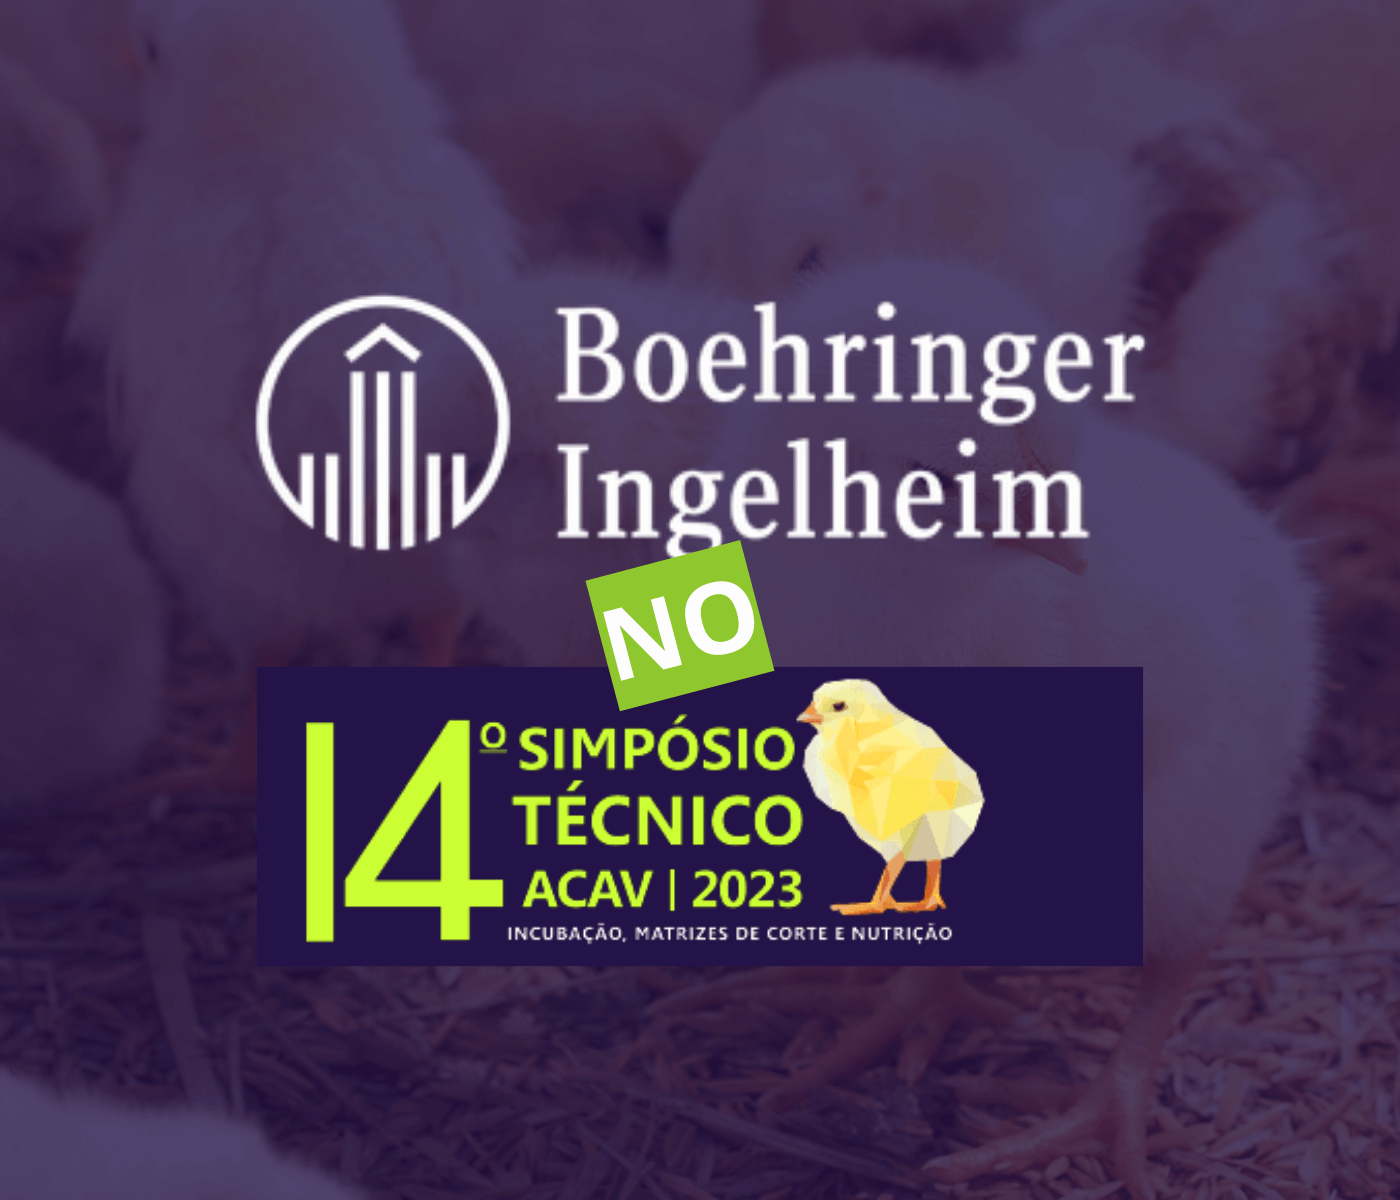 Boehringer Ingelheim fortalece compromisso com Saúde Única na indústria avícola...